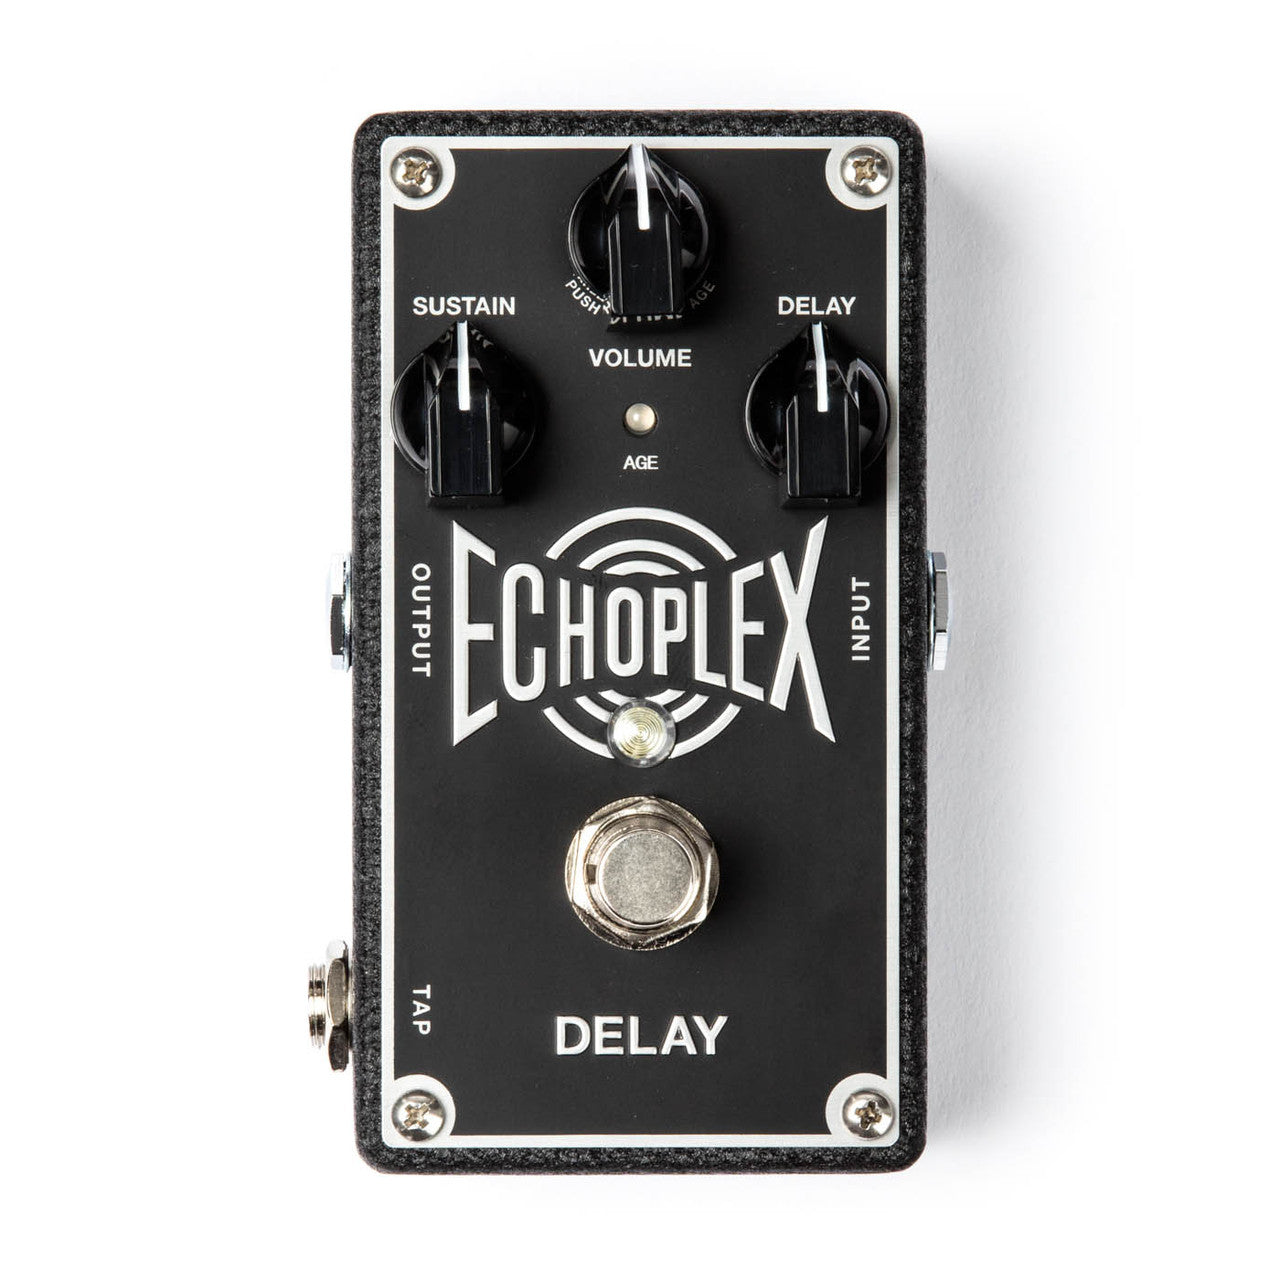 Dunlop Echoplex Delay Pedal